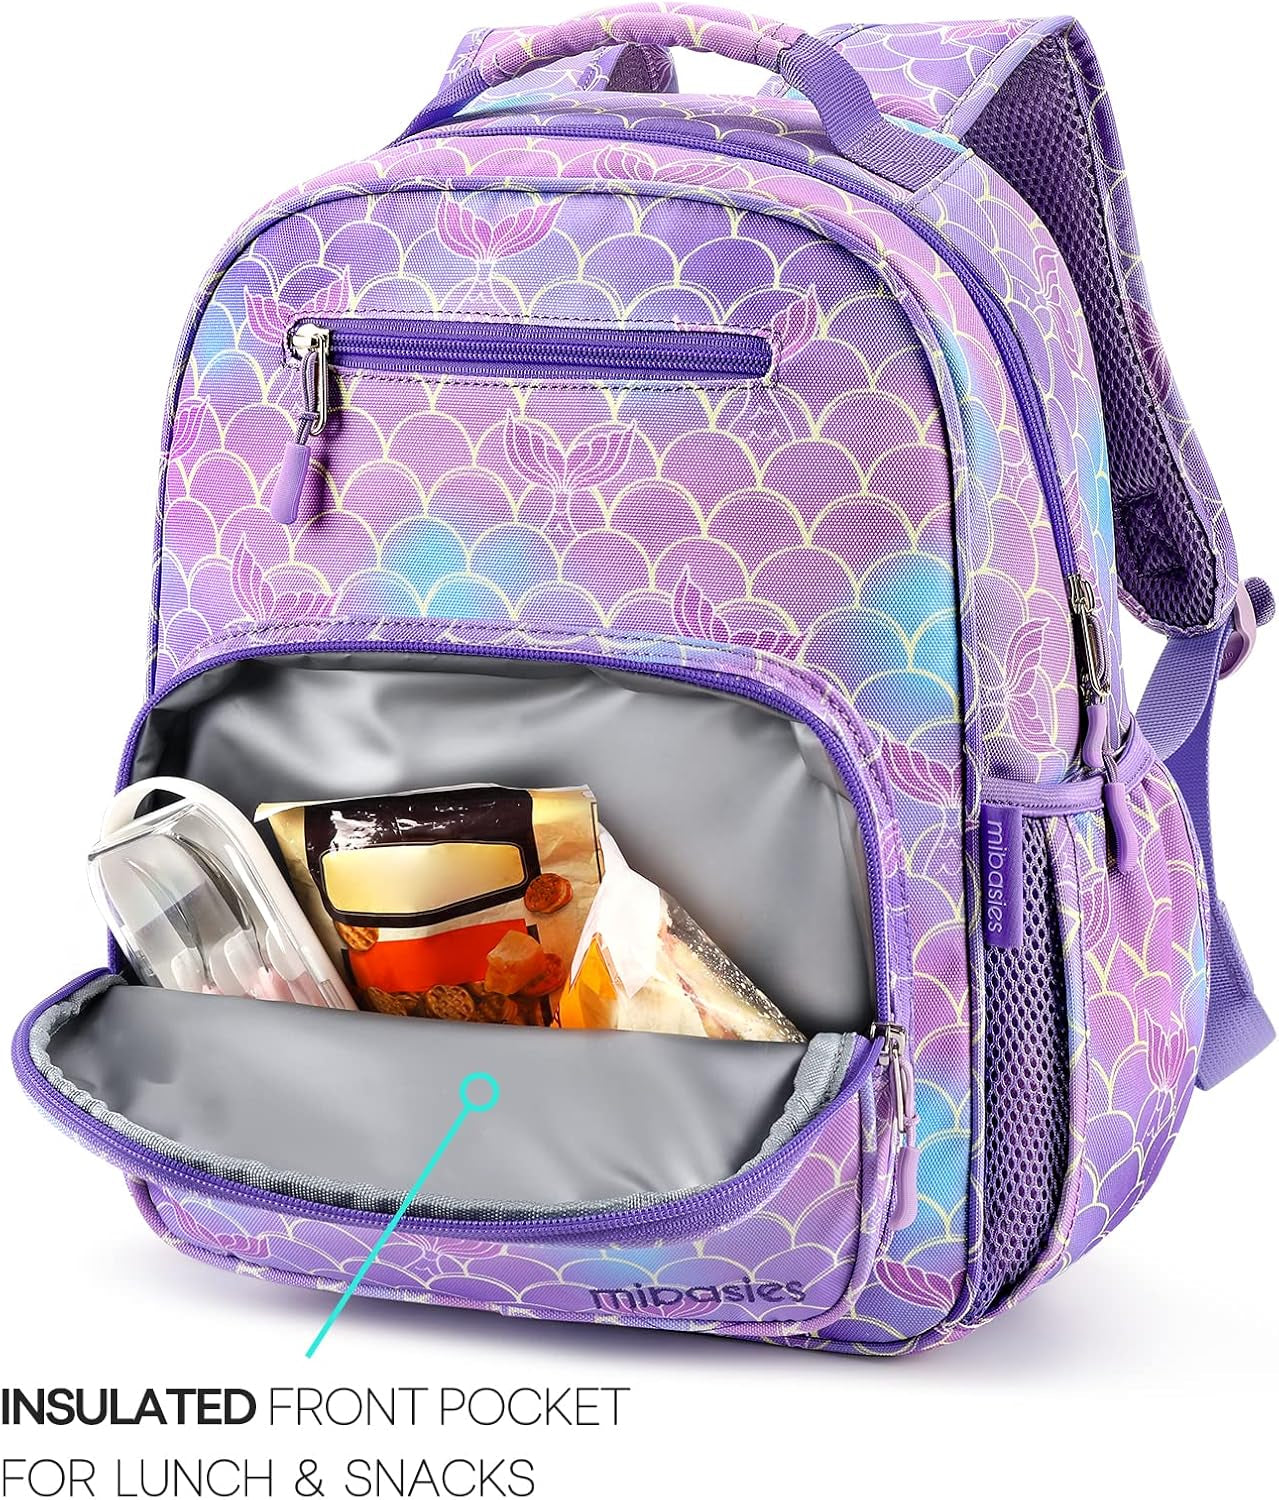 Toddler Backpack for Girls and Boys 2-4, Preschool Kindergarten Backpack, Cute Kids Backpacks for Girls（Glitter Twill Pink）